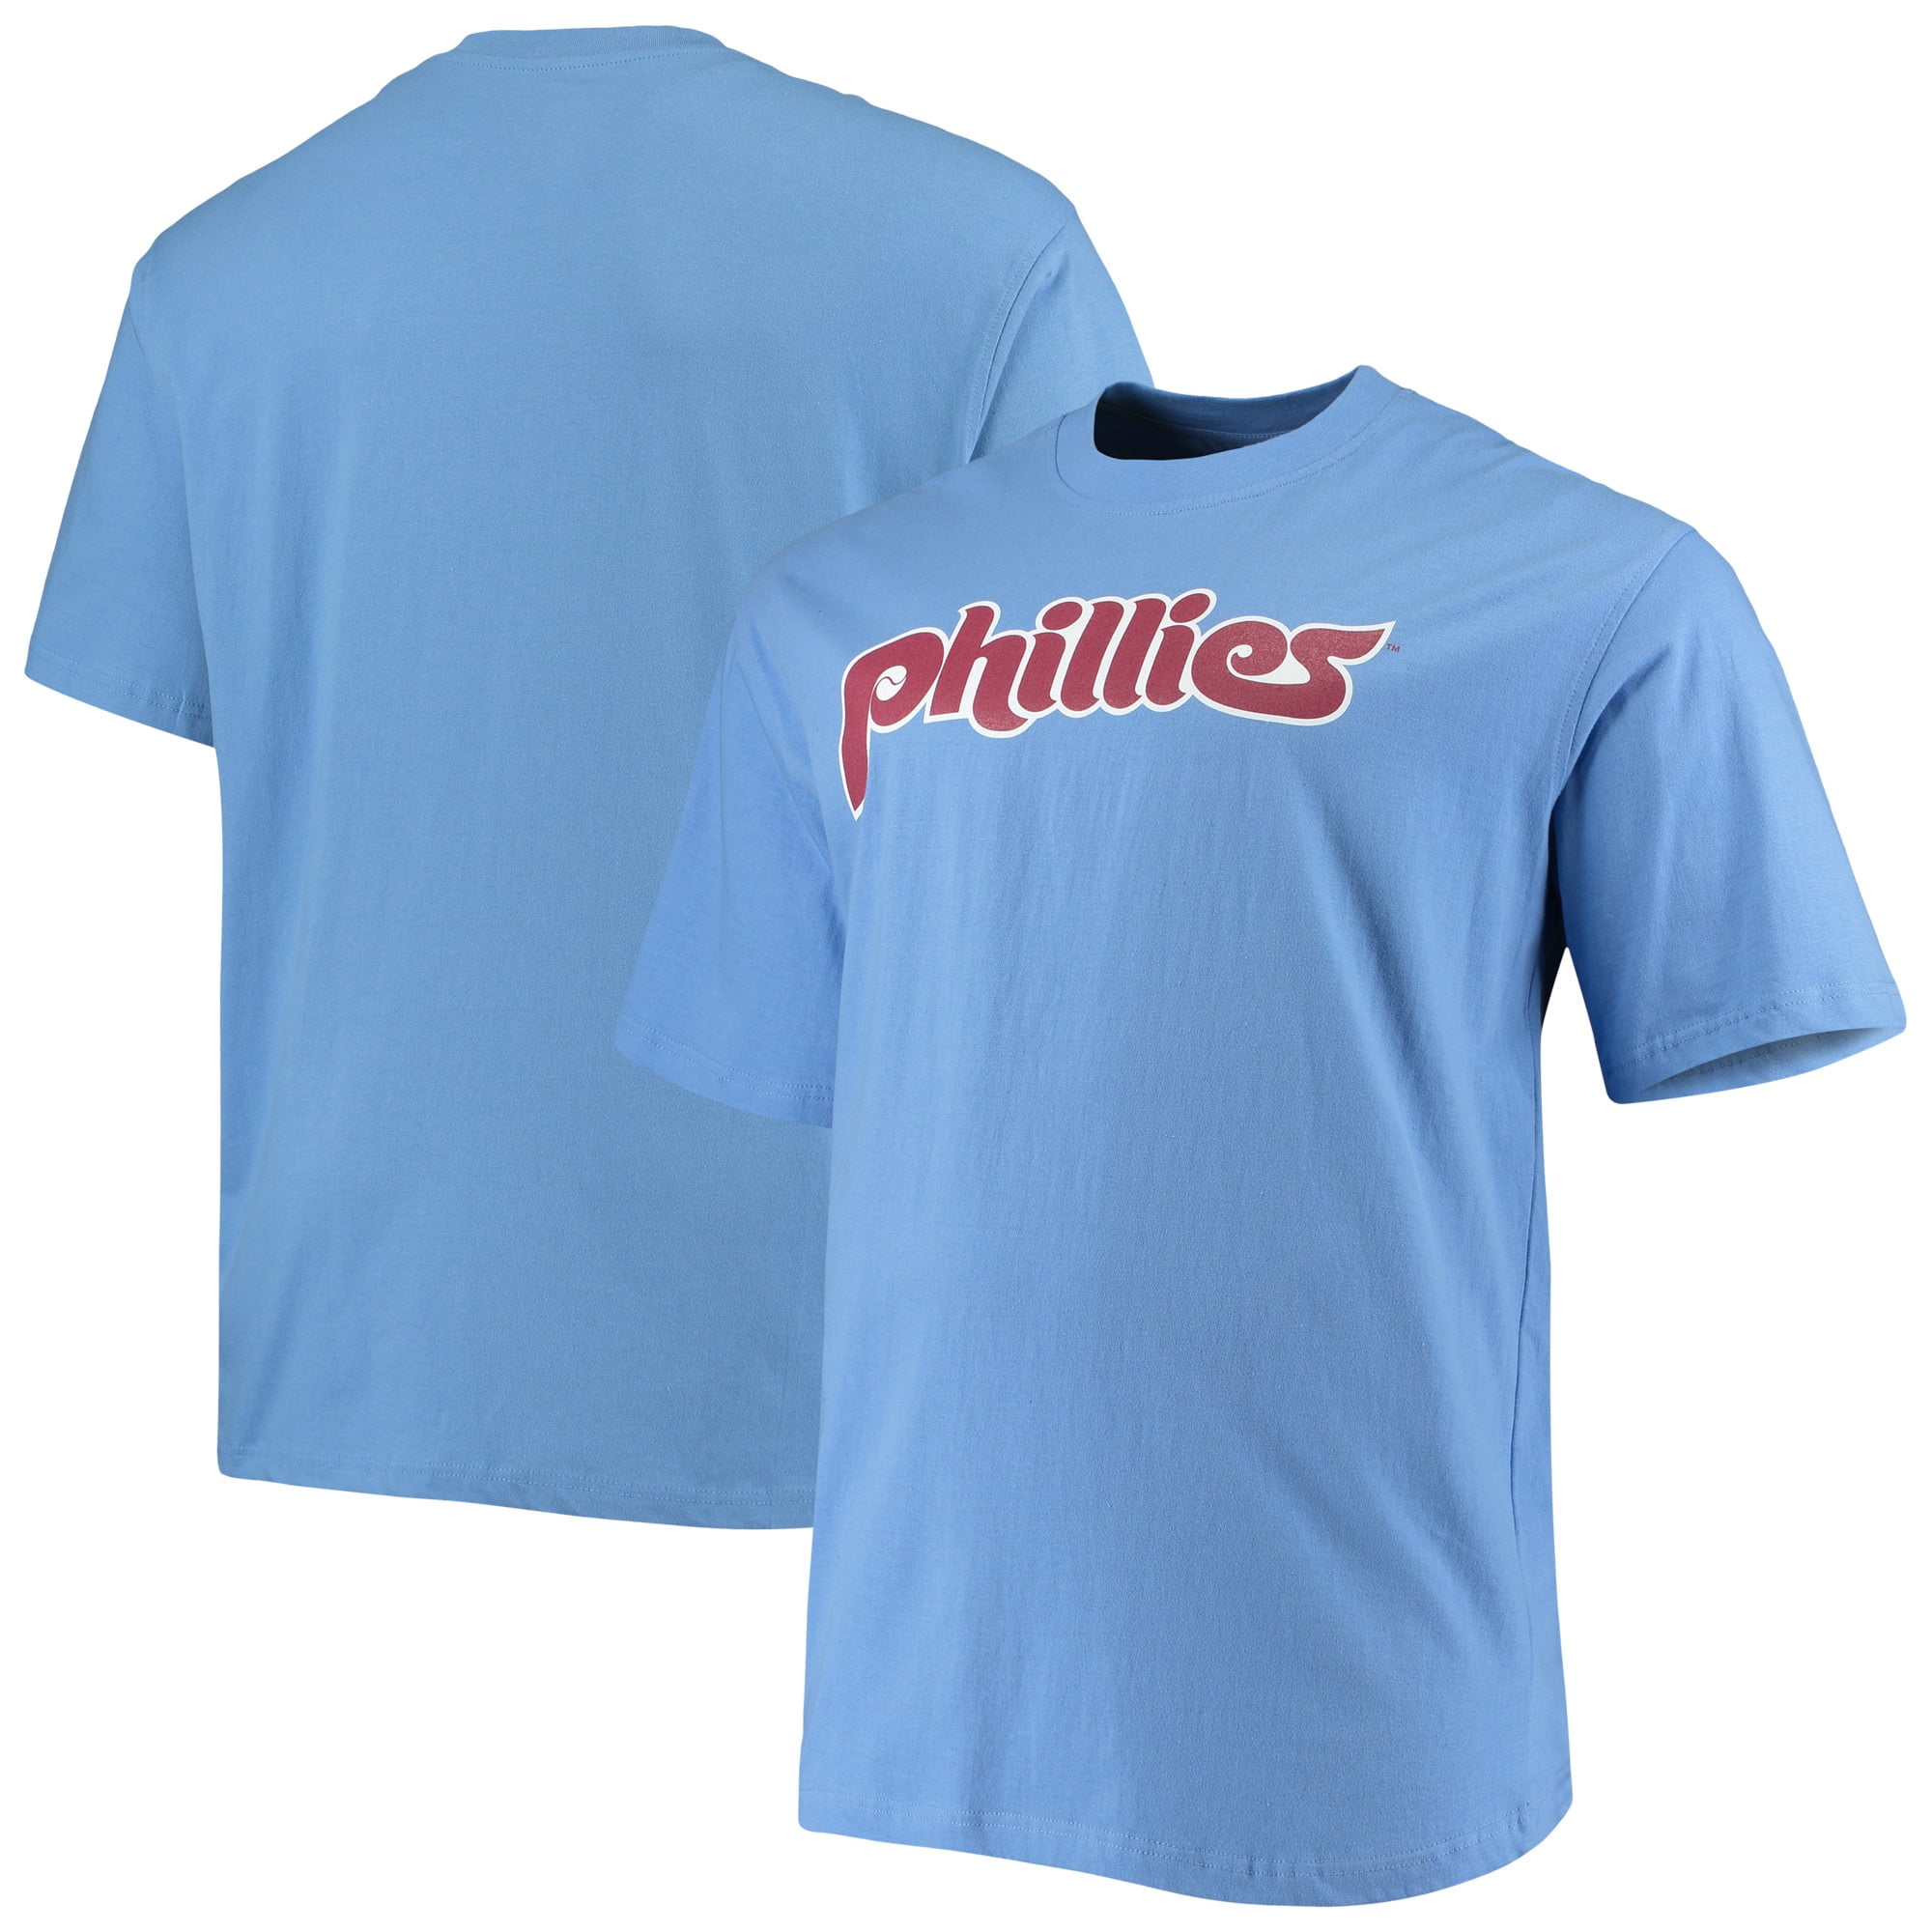 blue phillies shirt